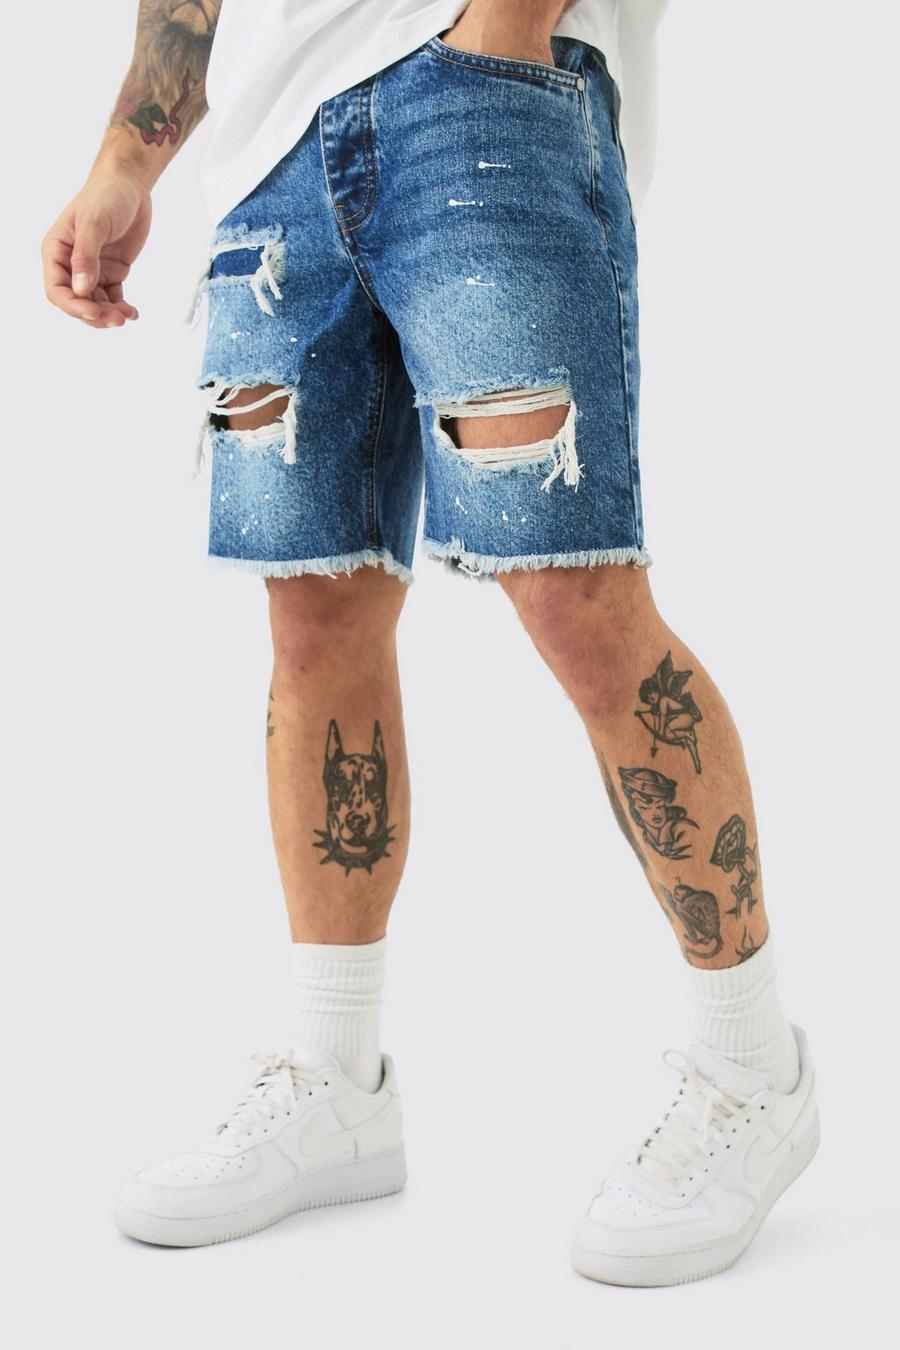 Pantalones cortos vaqueros ajustados sin tratar rotos con salpicaduras de pintura en azul claro, Light blue image number 1